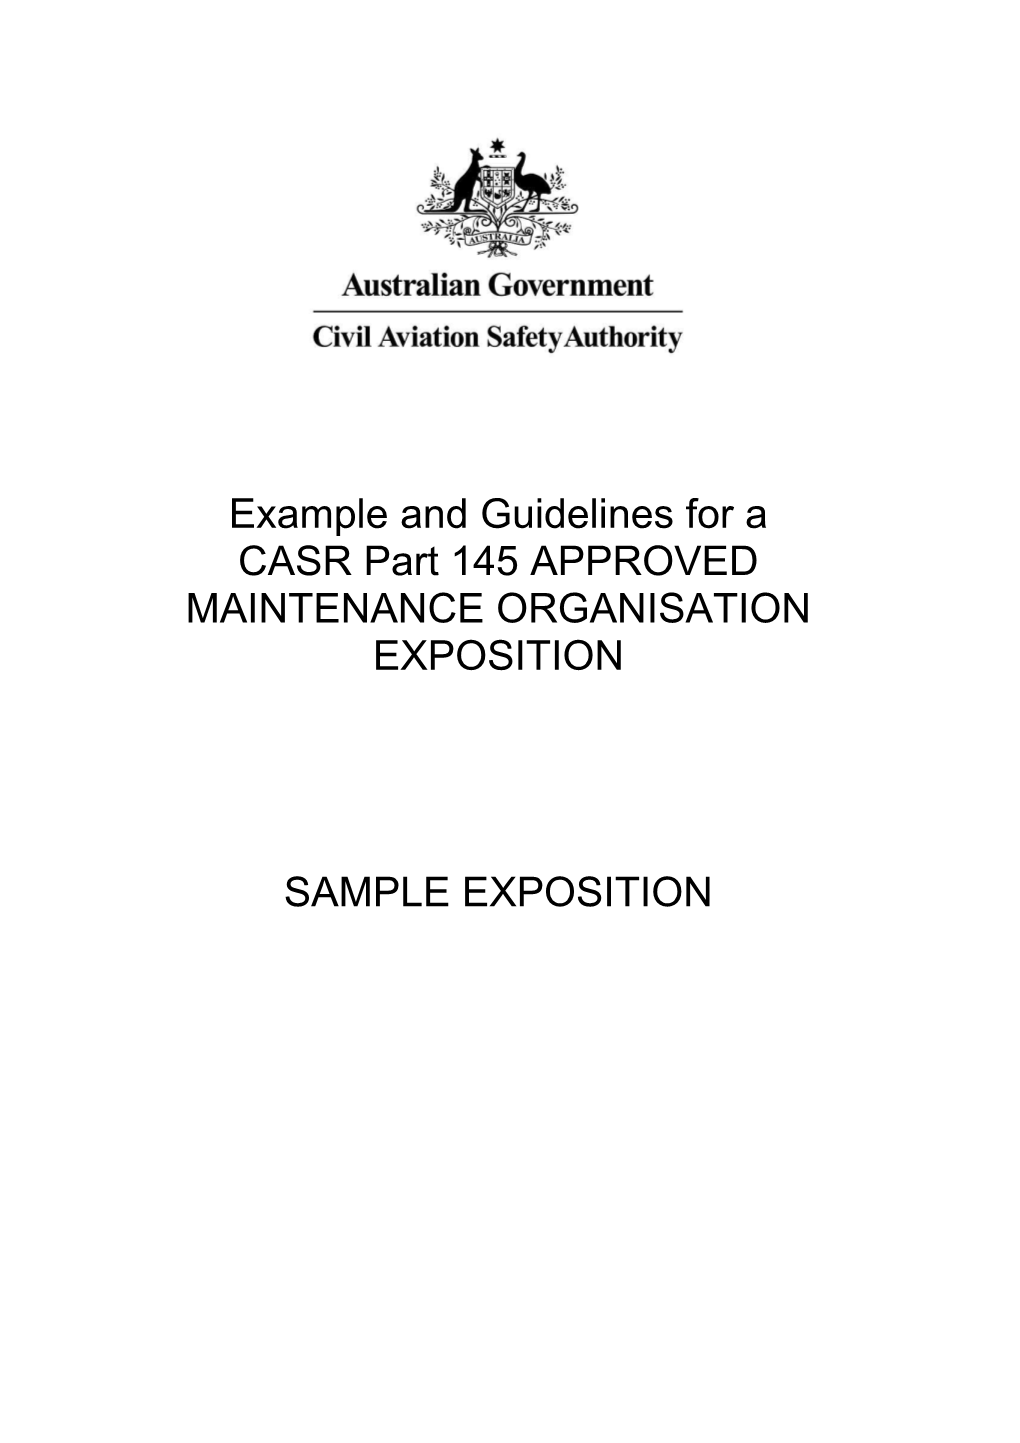 Sample Exposition (CASR Part 145 - AMO)